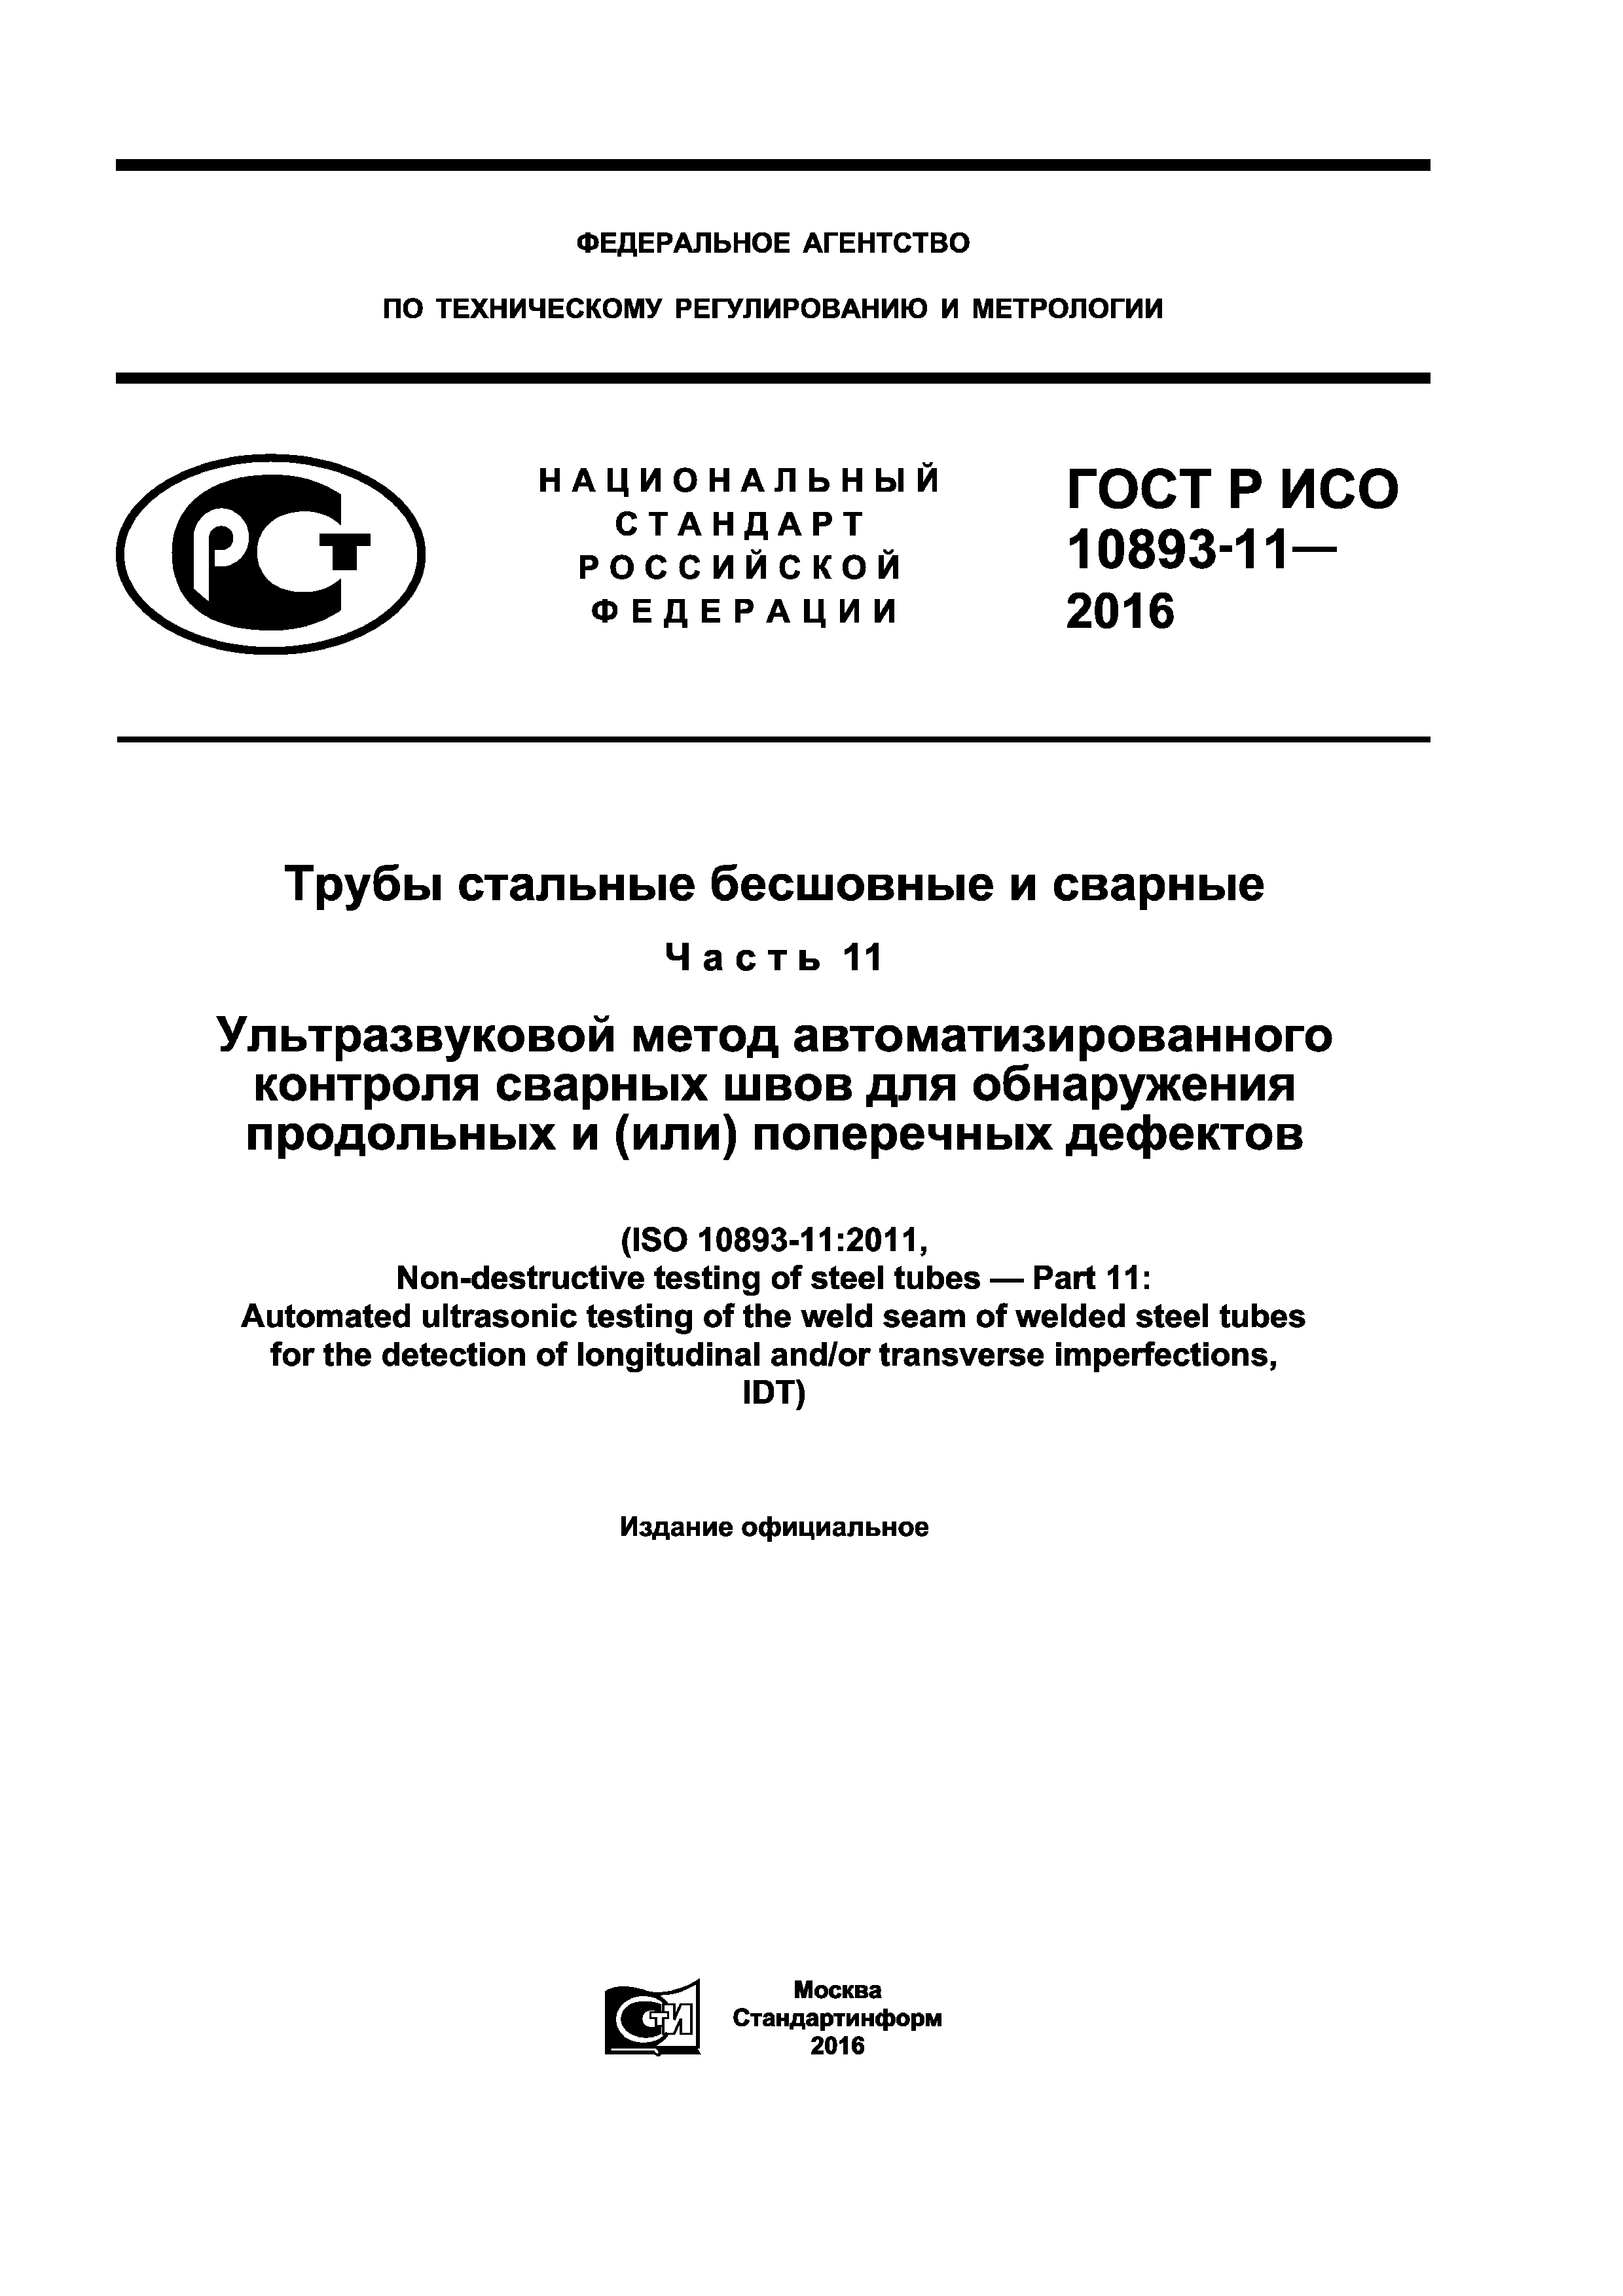 ГОСТ Р ИСО 10893-11-2016